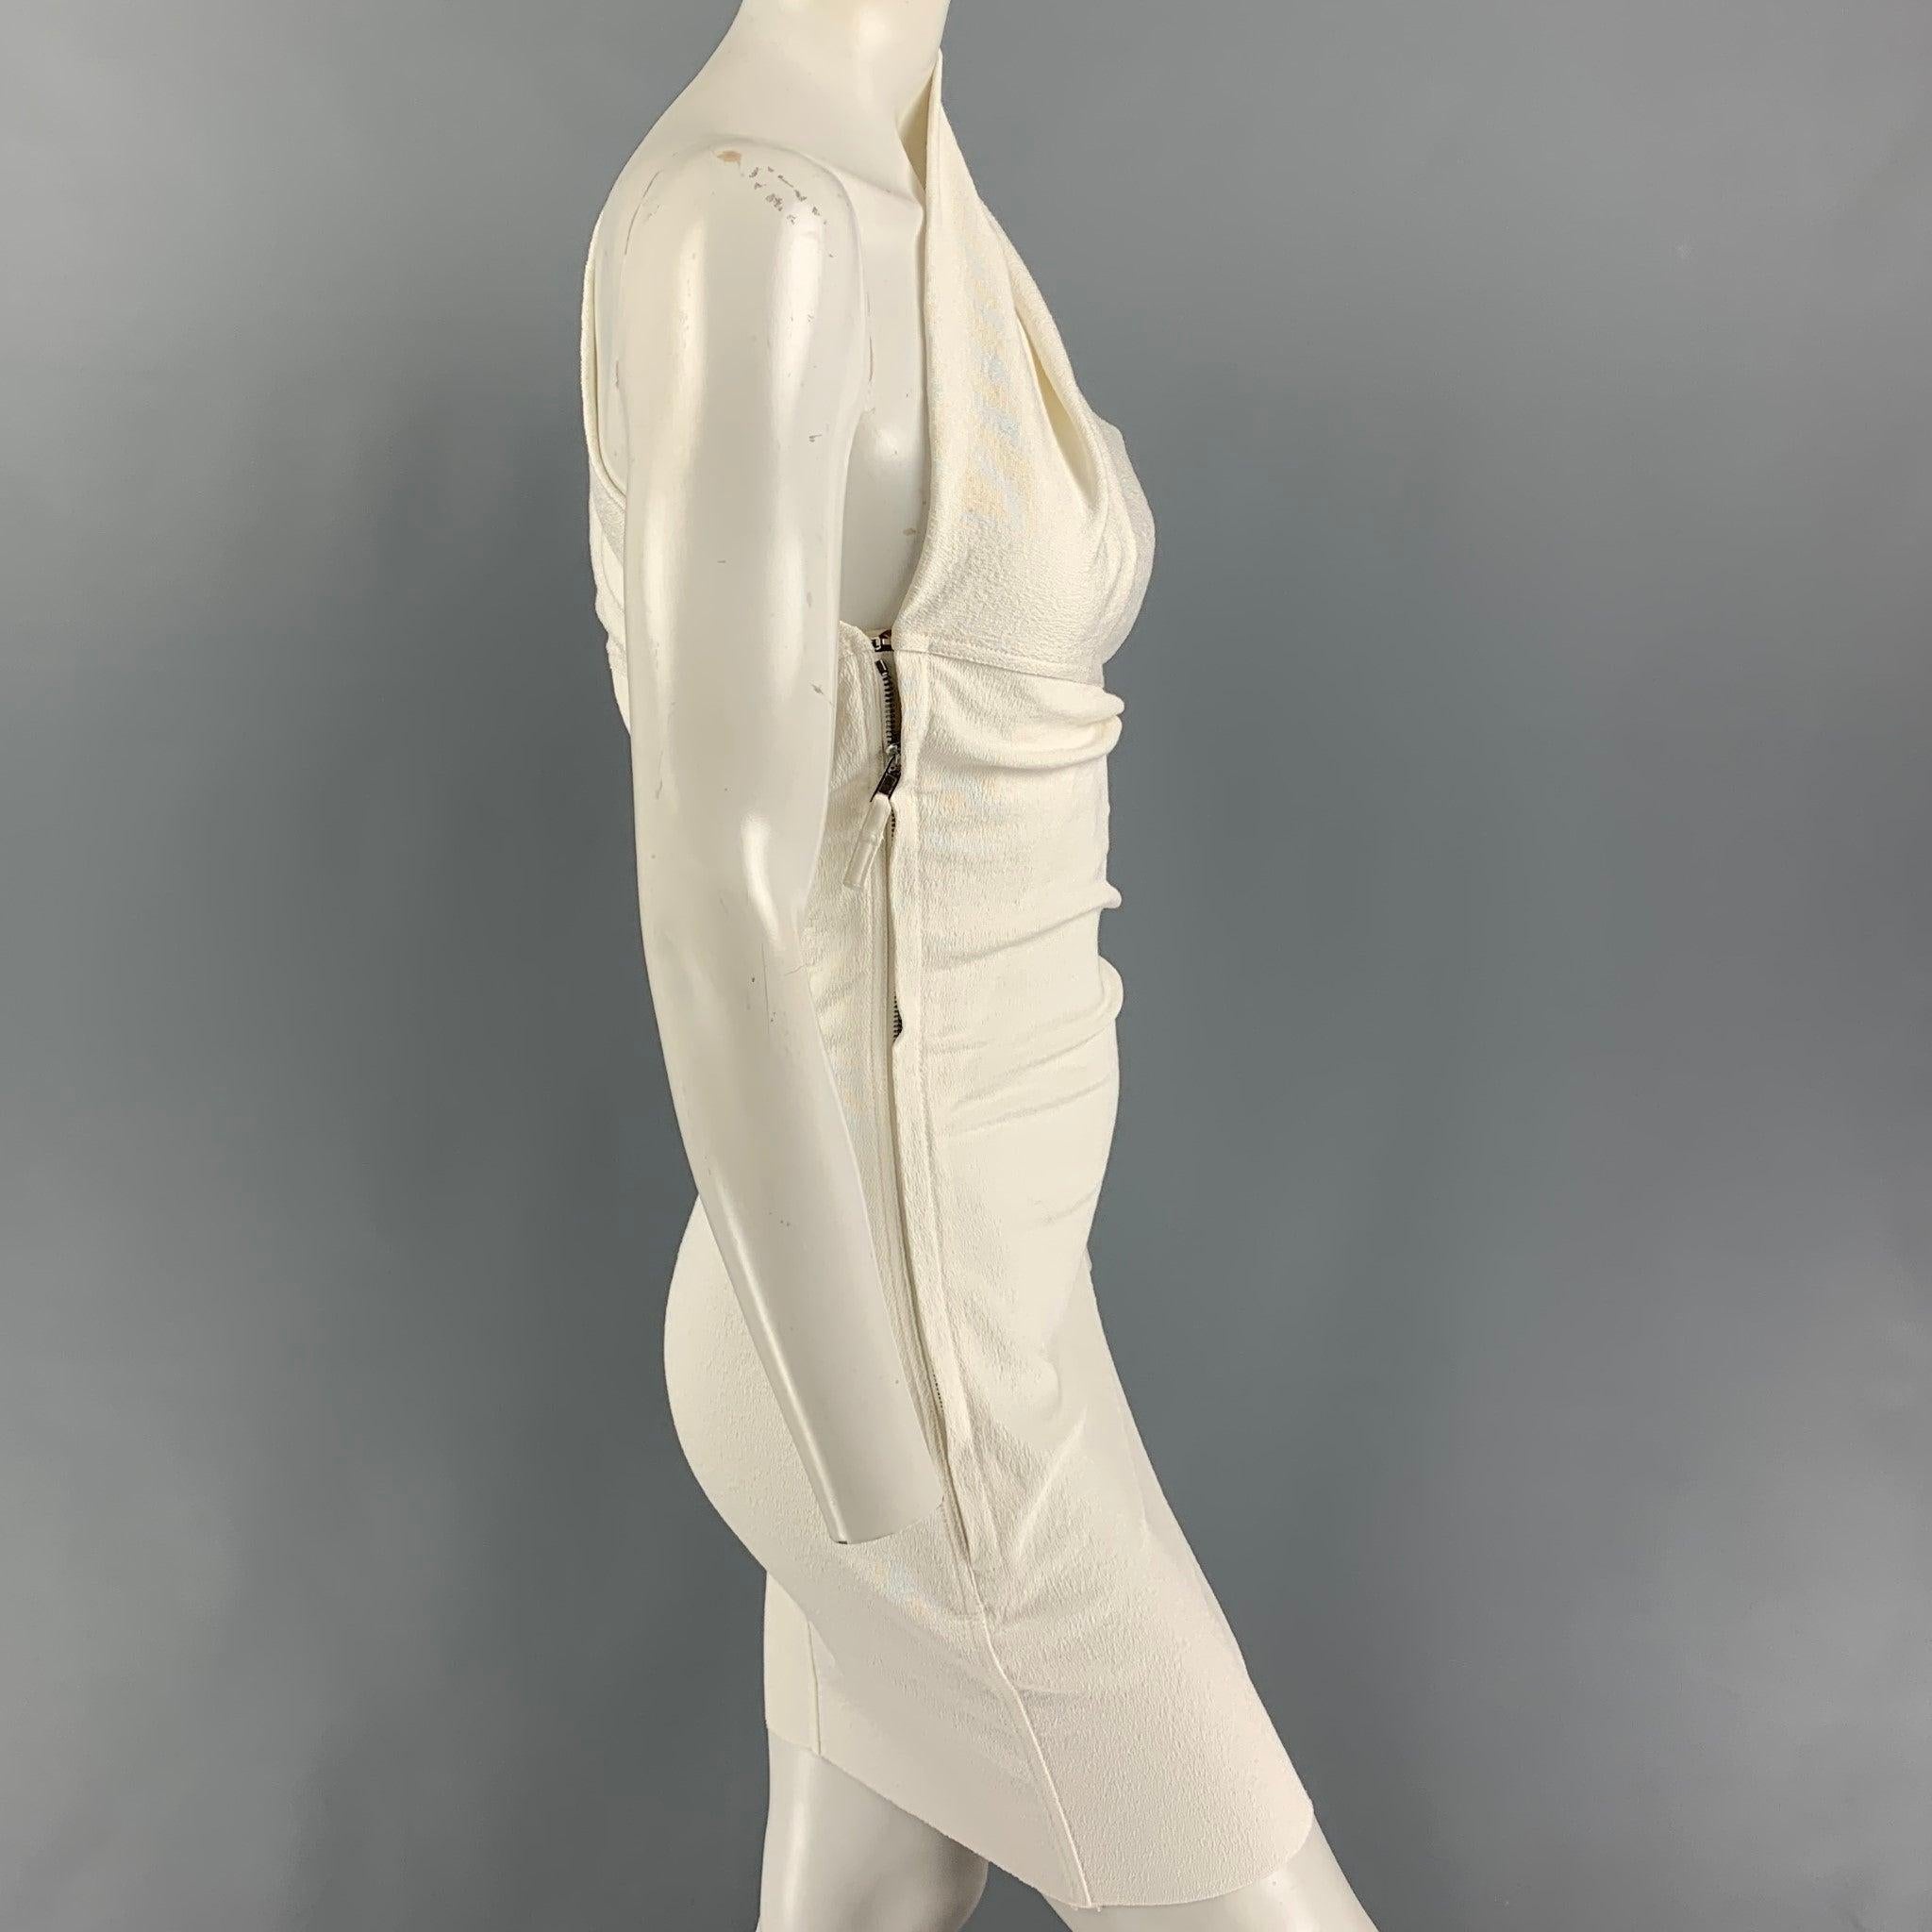 La robe 'Diana' de RICK OWENS STROBE FW 22 est réalisée en crêpe de coton mélangé écru et présente une silhouette sculpturale drapée à l'épaule, une manche unique et une fermeture à crochet et à glissière dissimulée.
Très bien
Etat d'occasion.